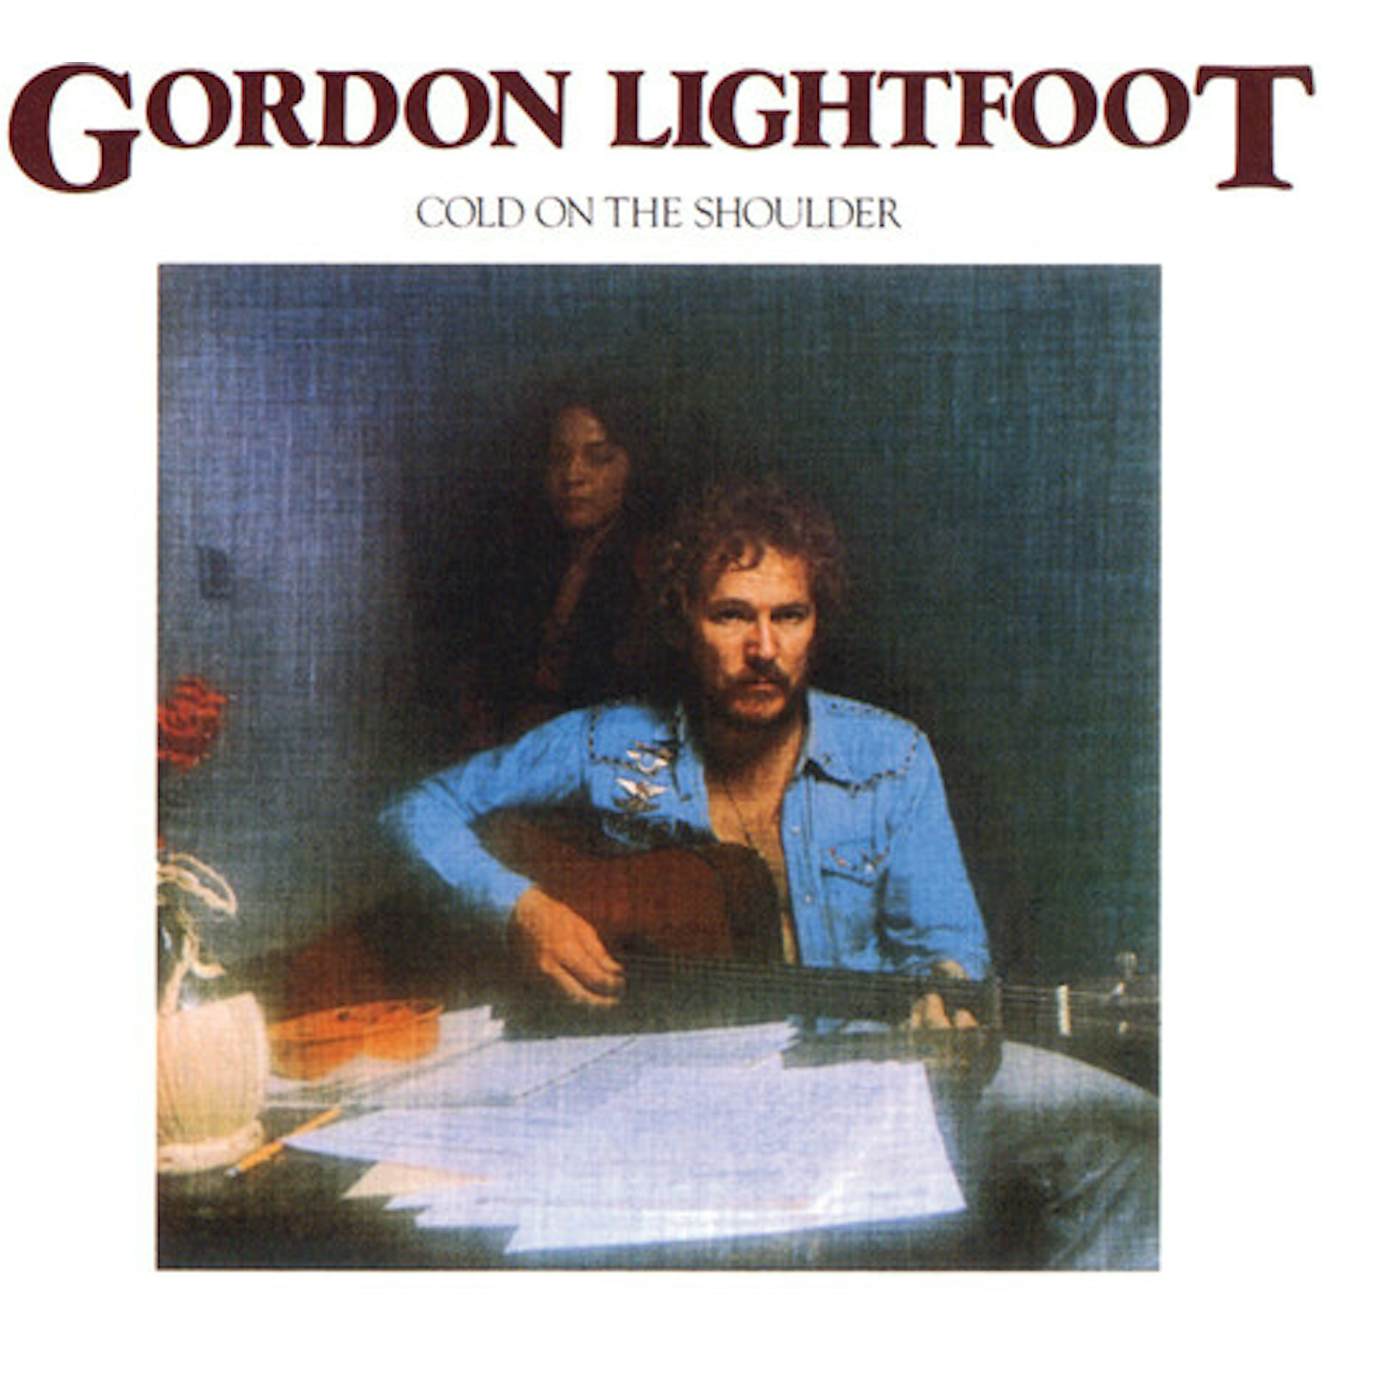 Gordon Lightfoot COLD ON THE SHOULDER CD